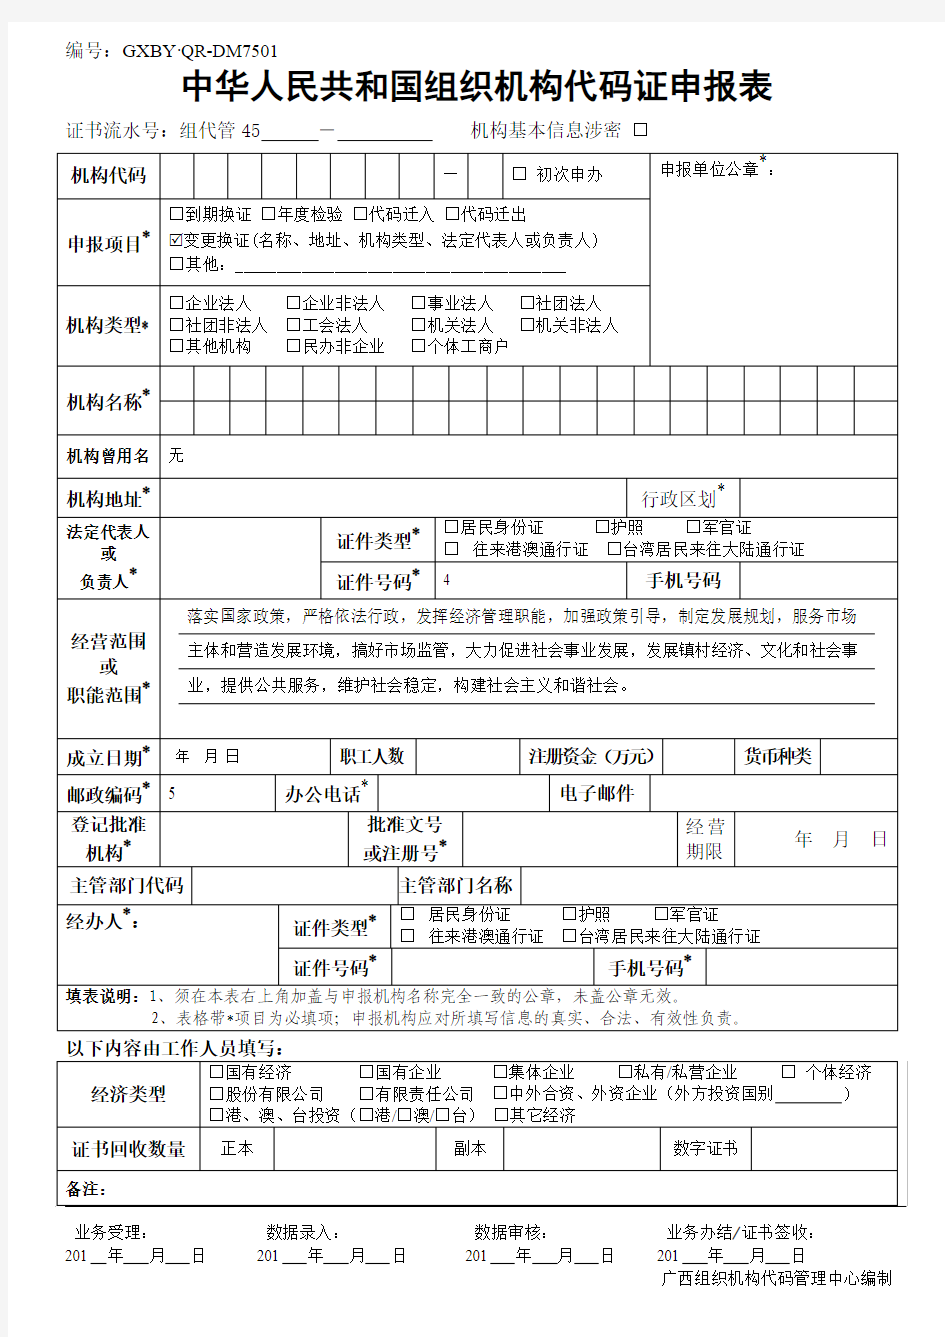 中华人民共和国组织机构代码证申报表(2014版)